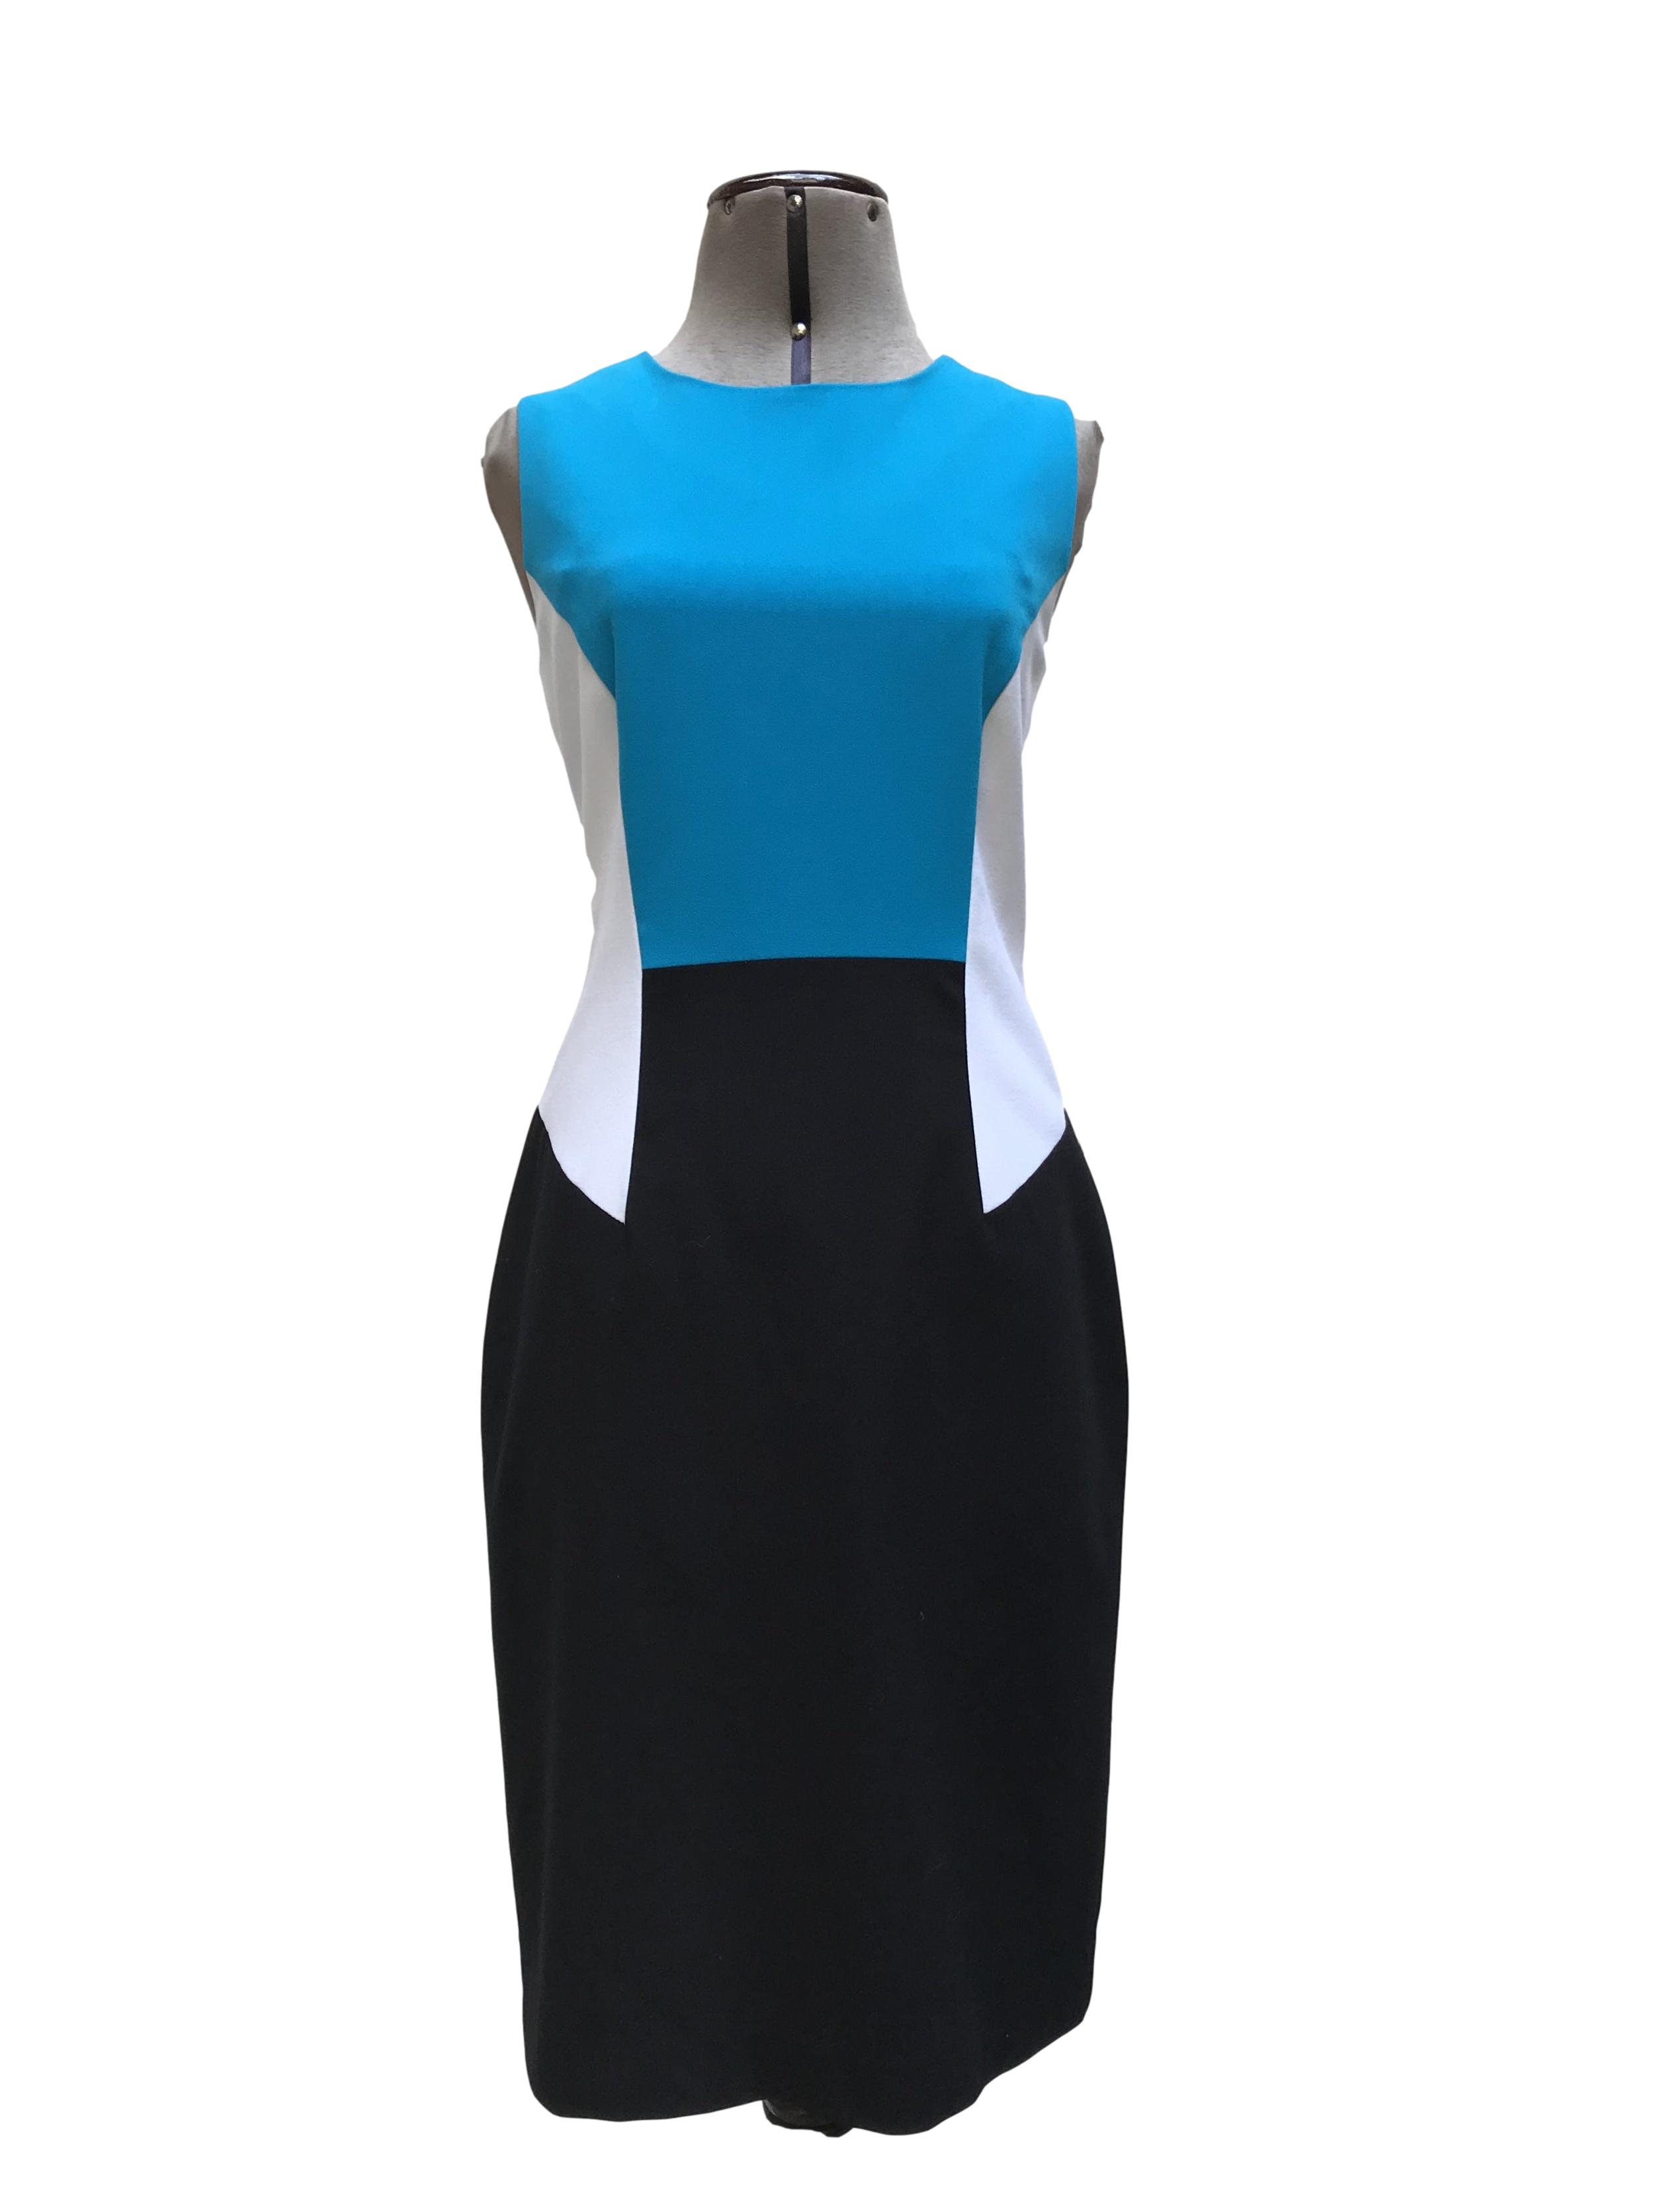 Vestido Calvin Klein tela tipo sastre negro, blanco y turquesa, forrado,  con cierre posterior. Precio original S/ 420. Busto 92cm Largo 95cm | Las  Traperas